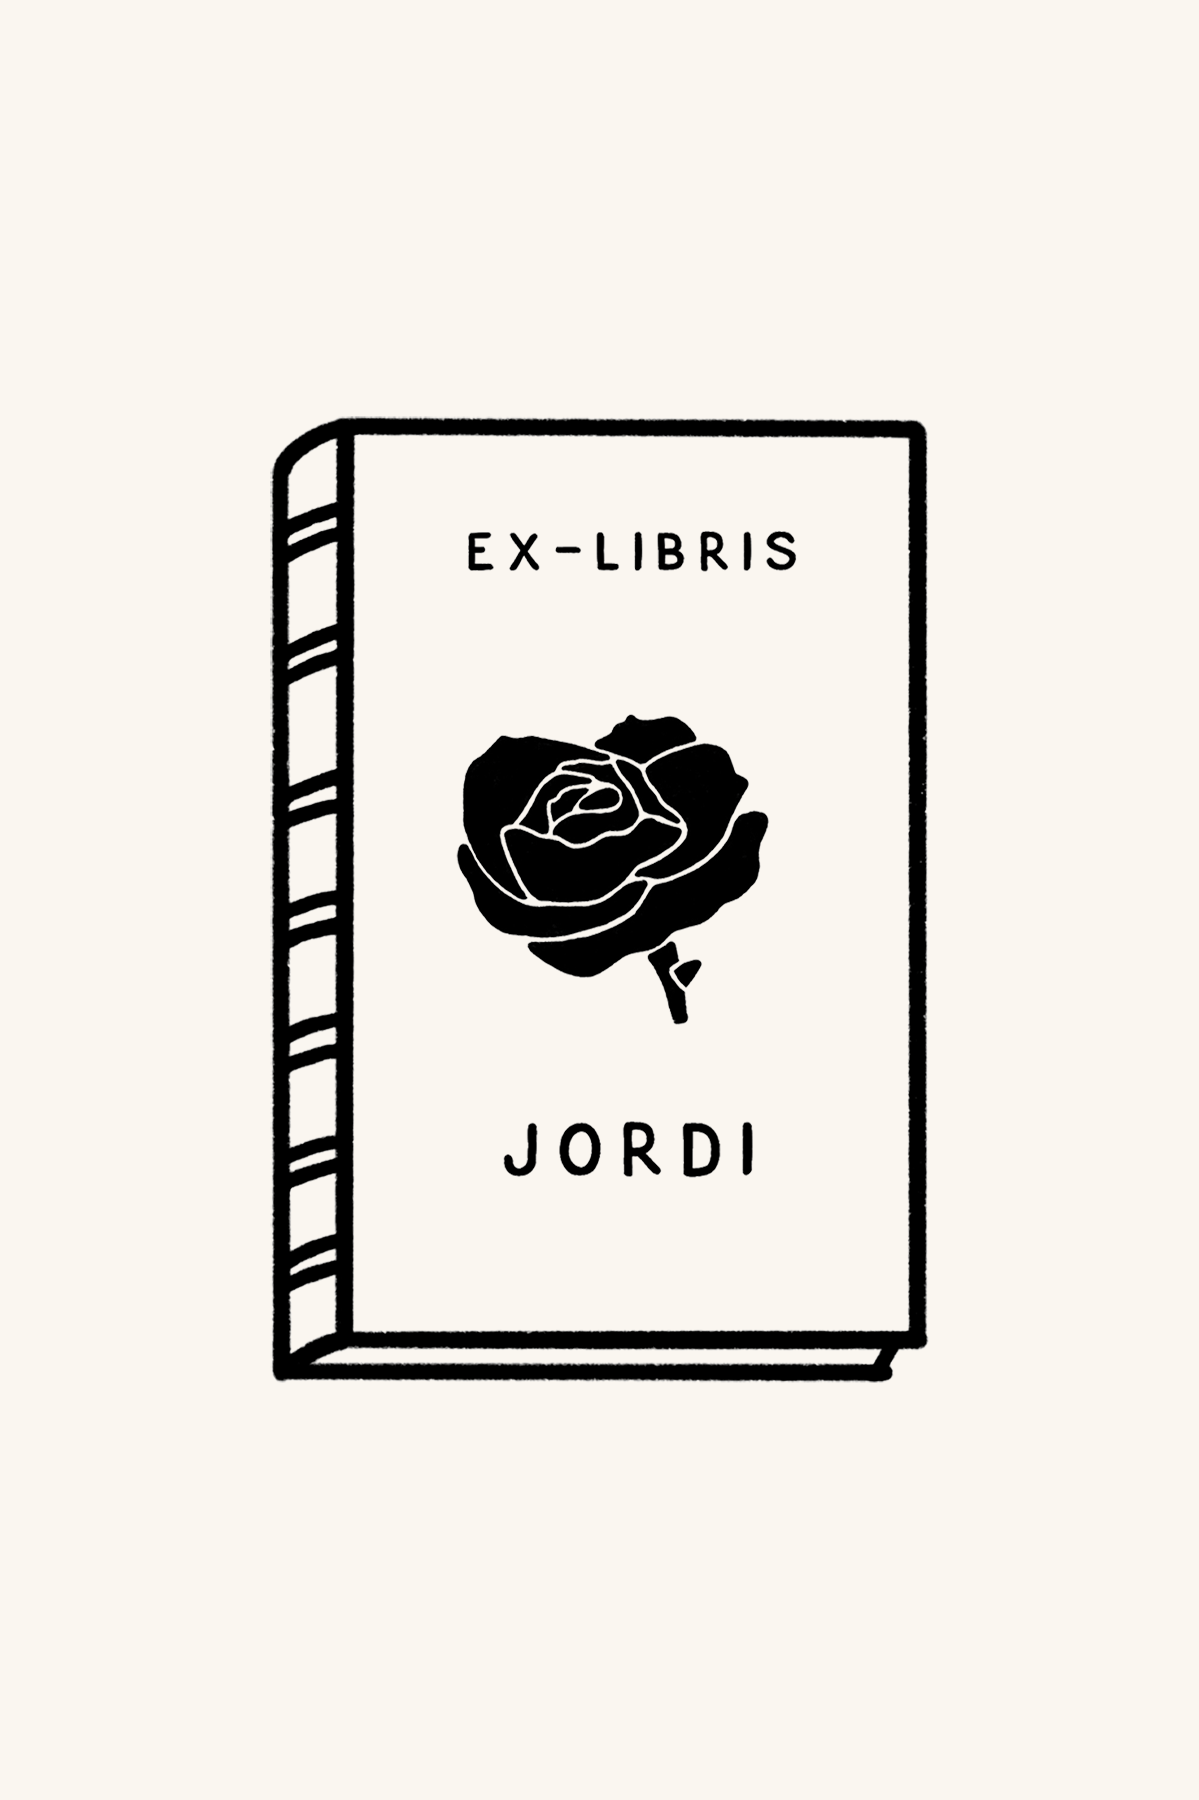 Dibujo de un libro con una rosa enmedio